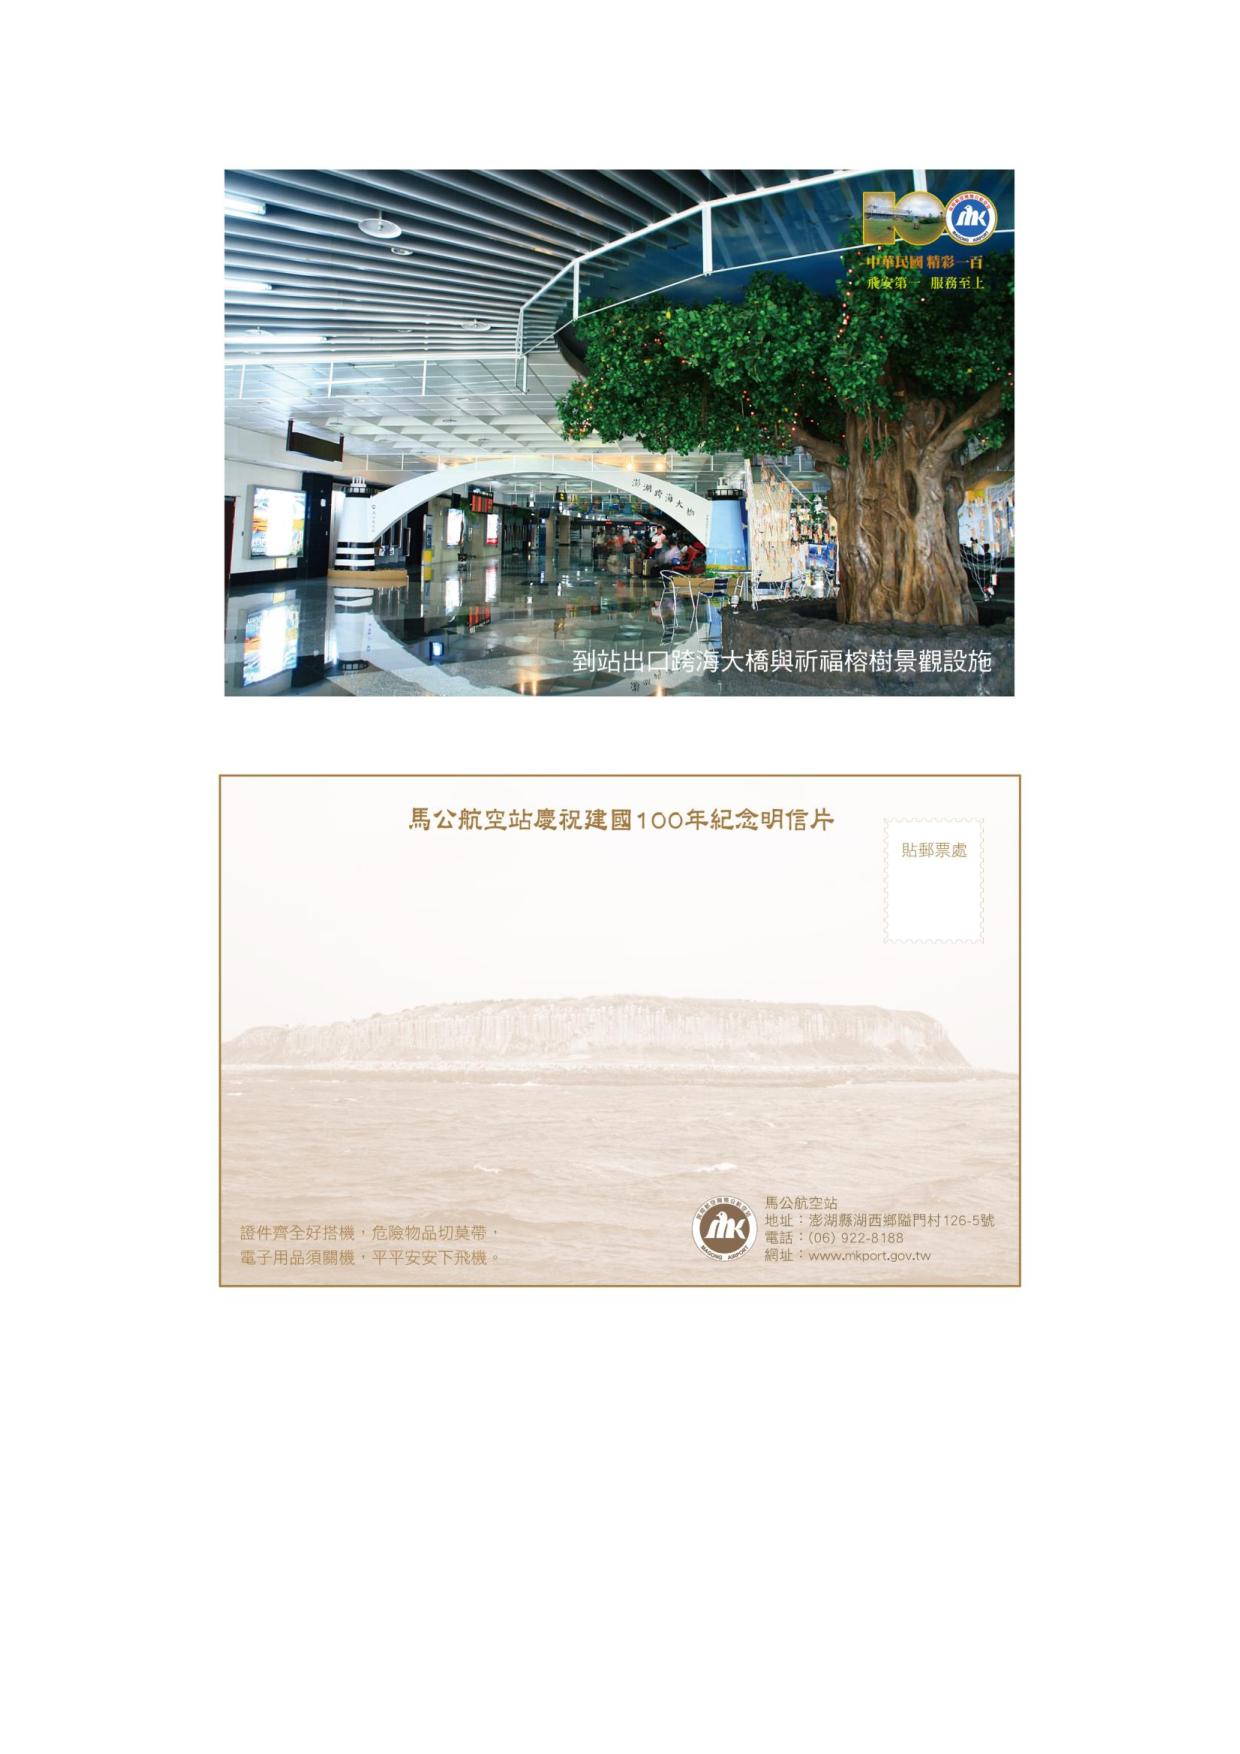 馬公站慶祝建國一百年紀念明信片7